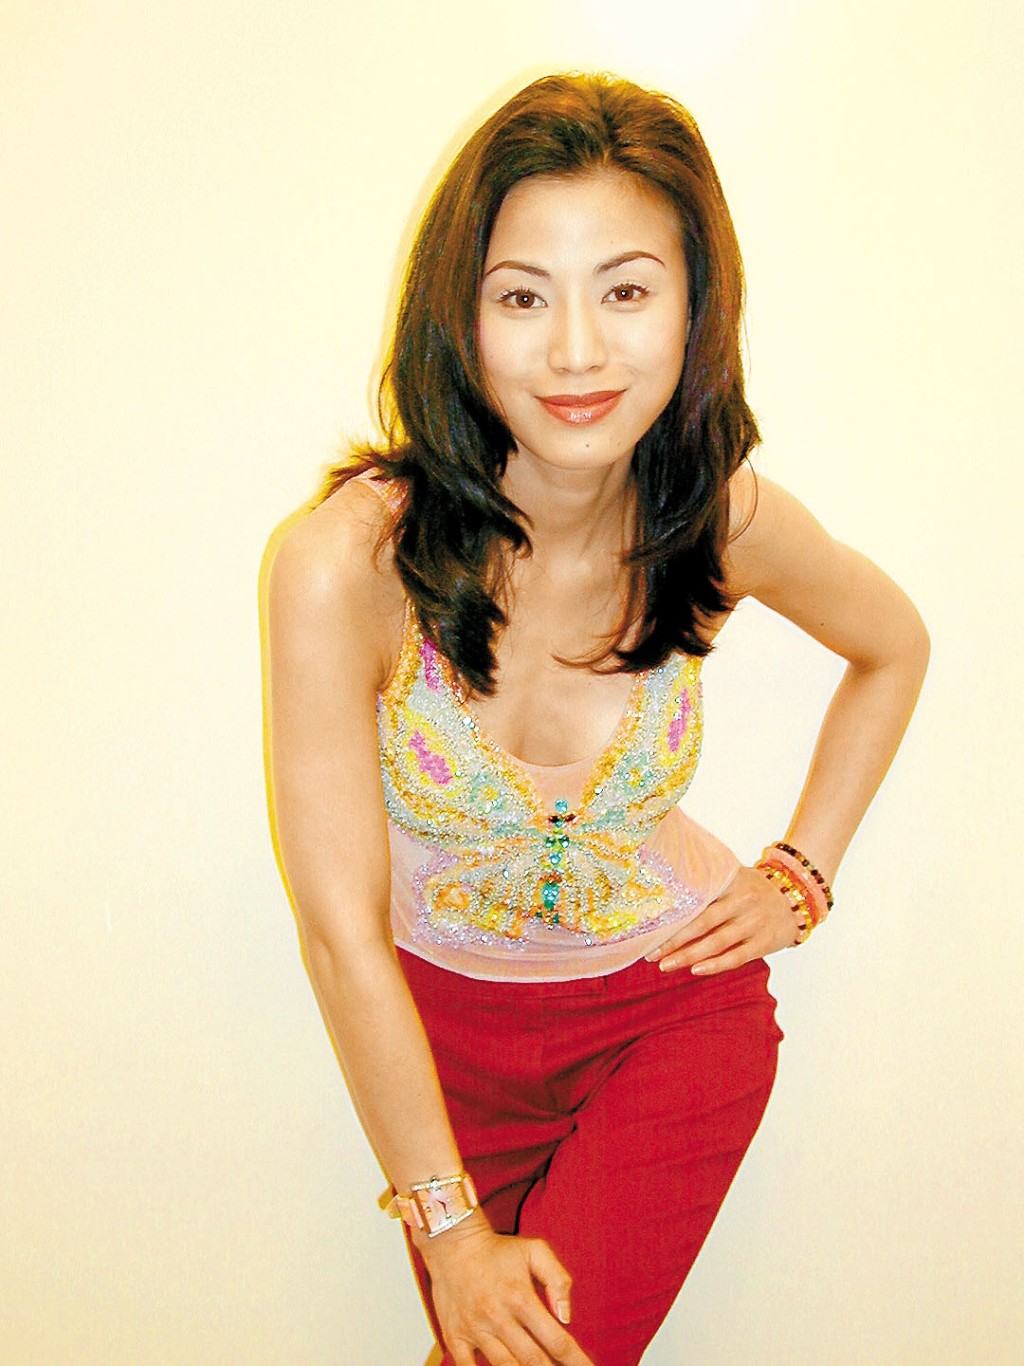 陈雅伦在1993年更曾推出性感写真、拍三级电影《危情》，人气随即急升，成为当年的性感女神。